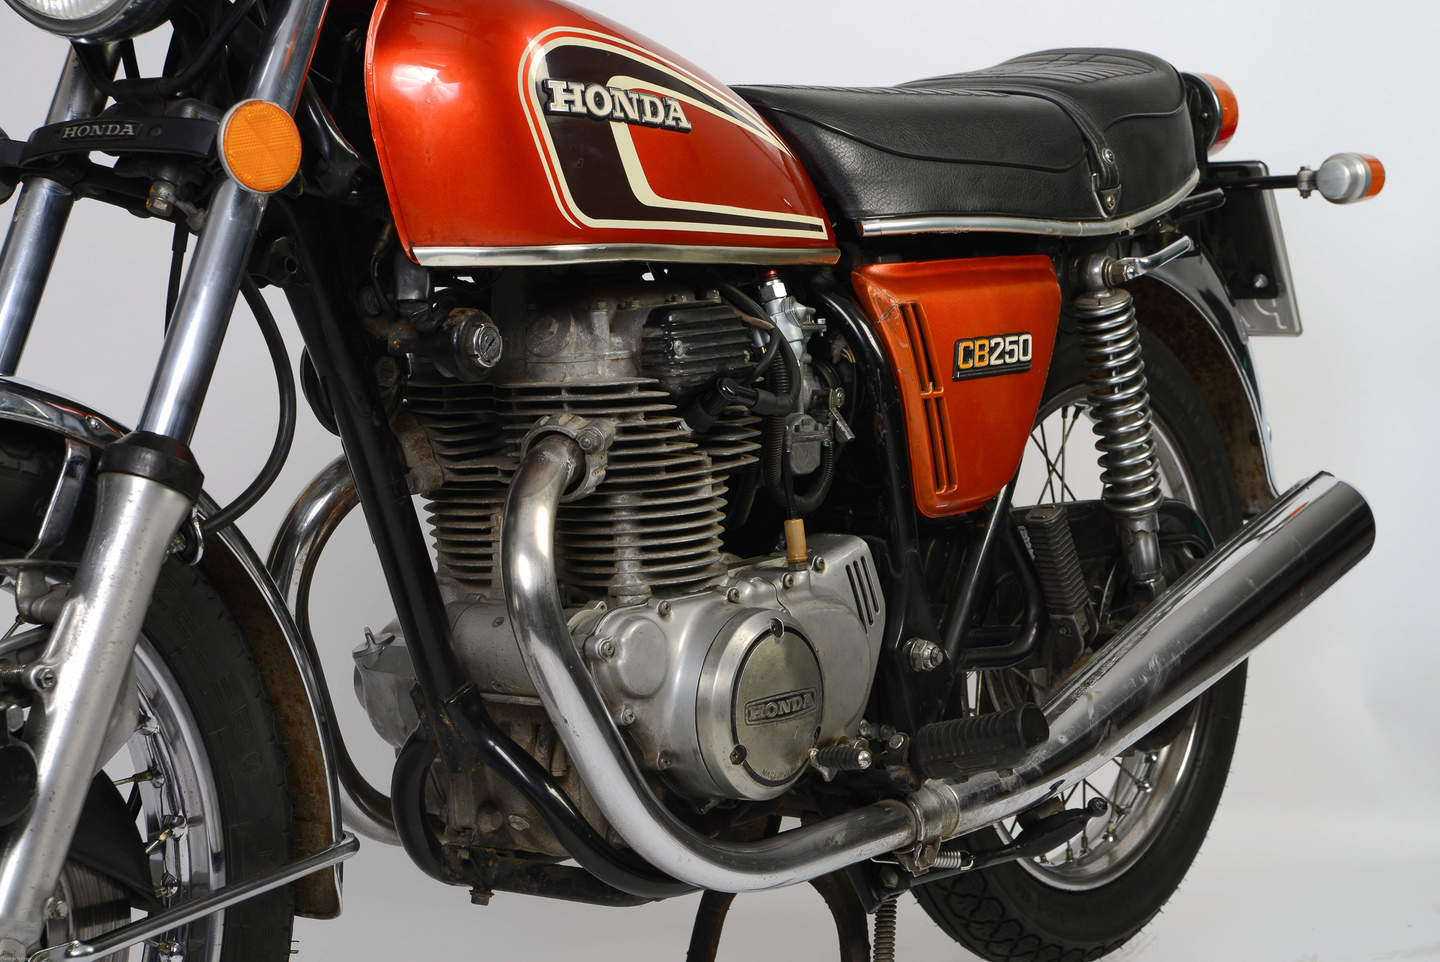 Honda CB 250 K (1967-1976) - meistverkauftes 250er Motorrad